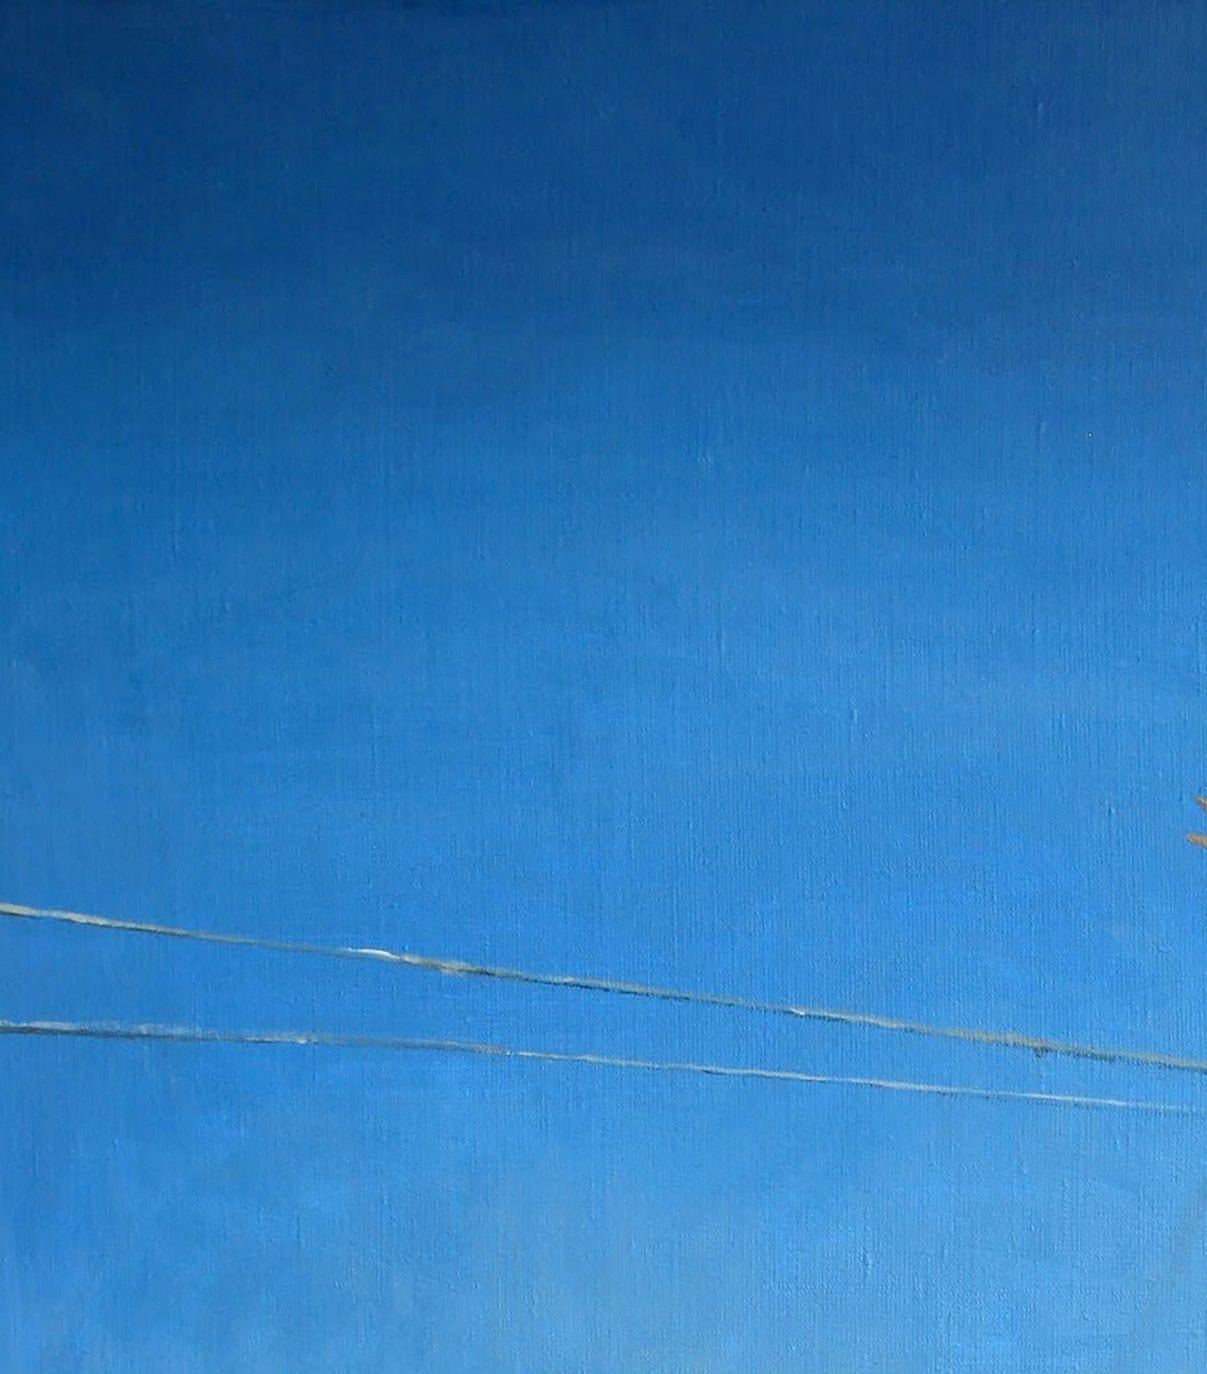 Künstler: Warwarow Anatoli Viktorowitsch
Titel: Unter dem Schutz eines Kranichs,
Größe: 31,5x23,5 Zoll, (80x60 cm)
Medium: Öl auf Leinwand
Handbemalt, original, einzigartig.

Wenn man sich 